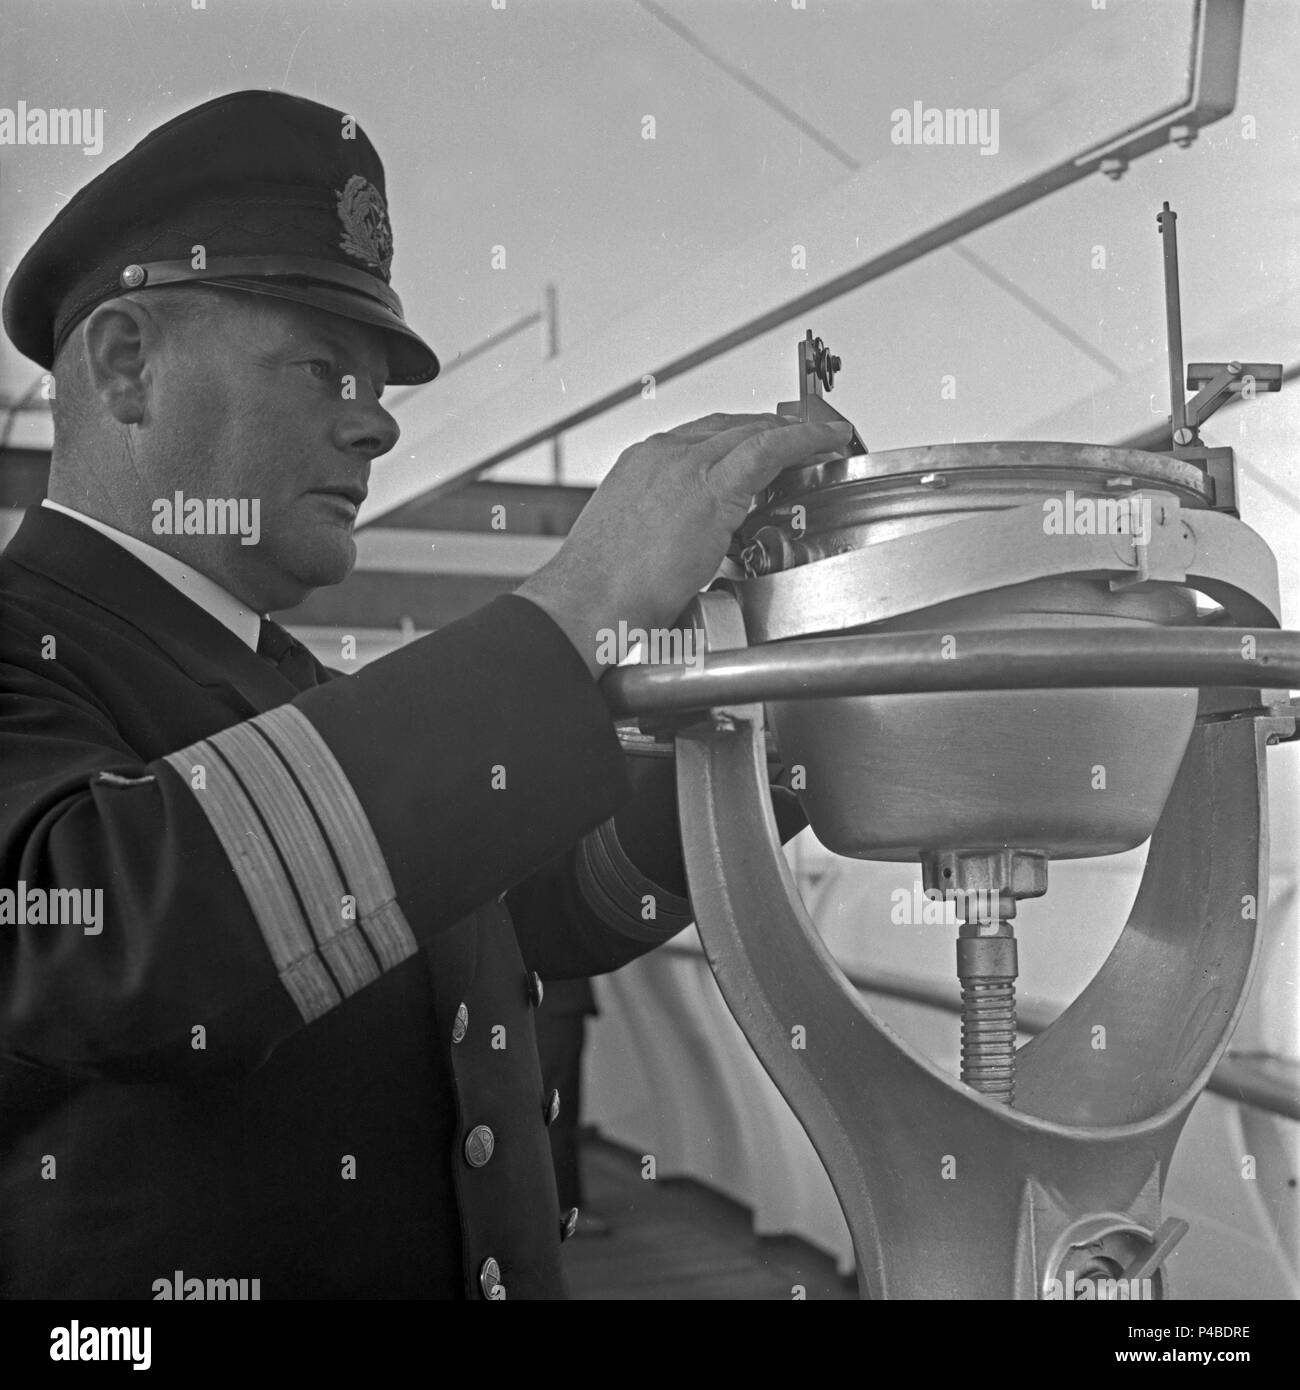 Krankenhaus Schiff "Wilhelm Gustloff" - Kapitän Friedrich Petersen für technische Details, wie z.b. die Gefahr der Minen oder u-Boote während der Krieg gegen England verantwortlich ist. Stockfoto